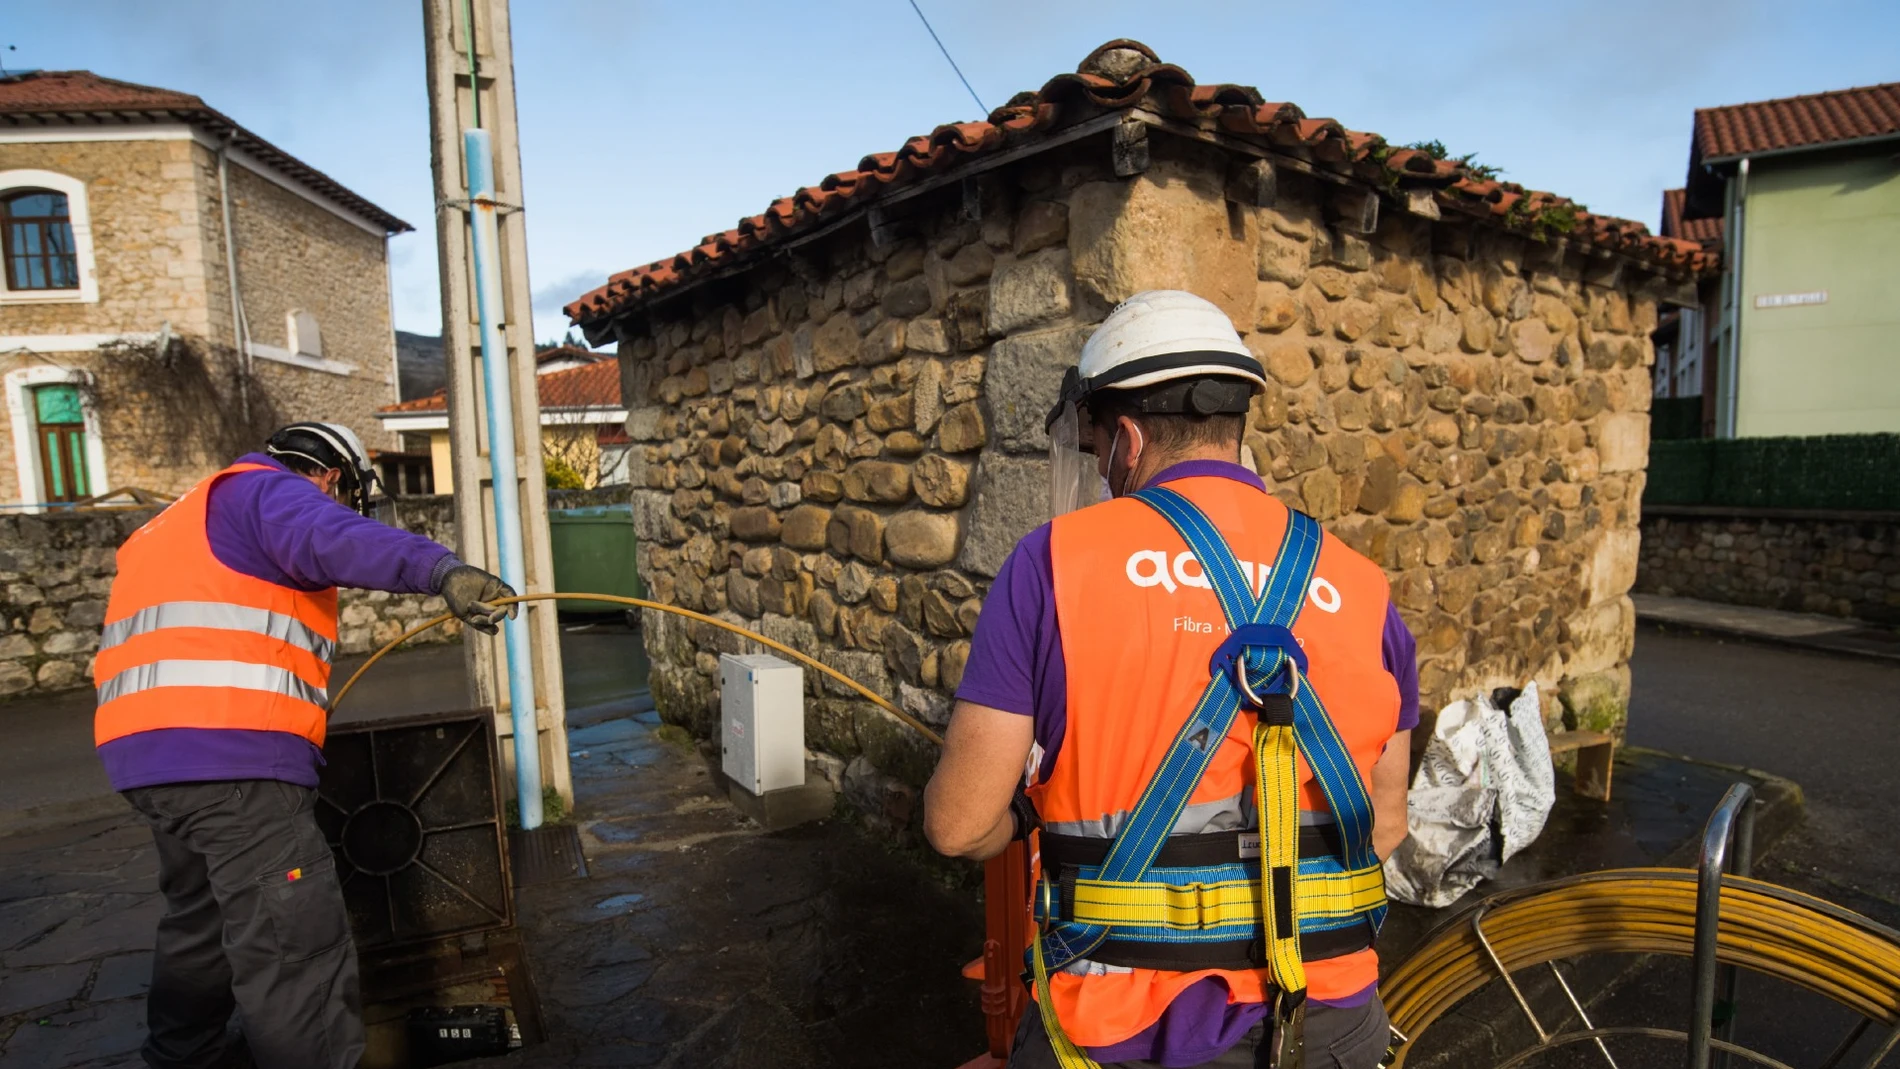 Despliegue de fibra óptica de Adamo en un pueblo de Zamora